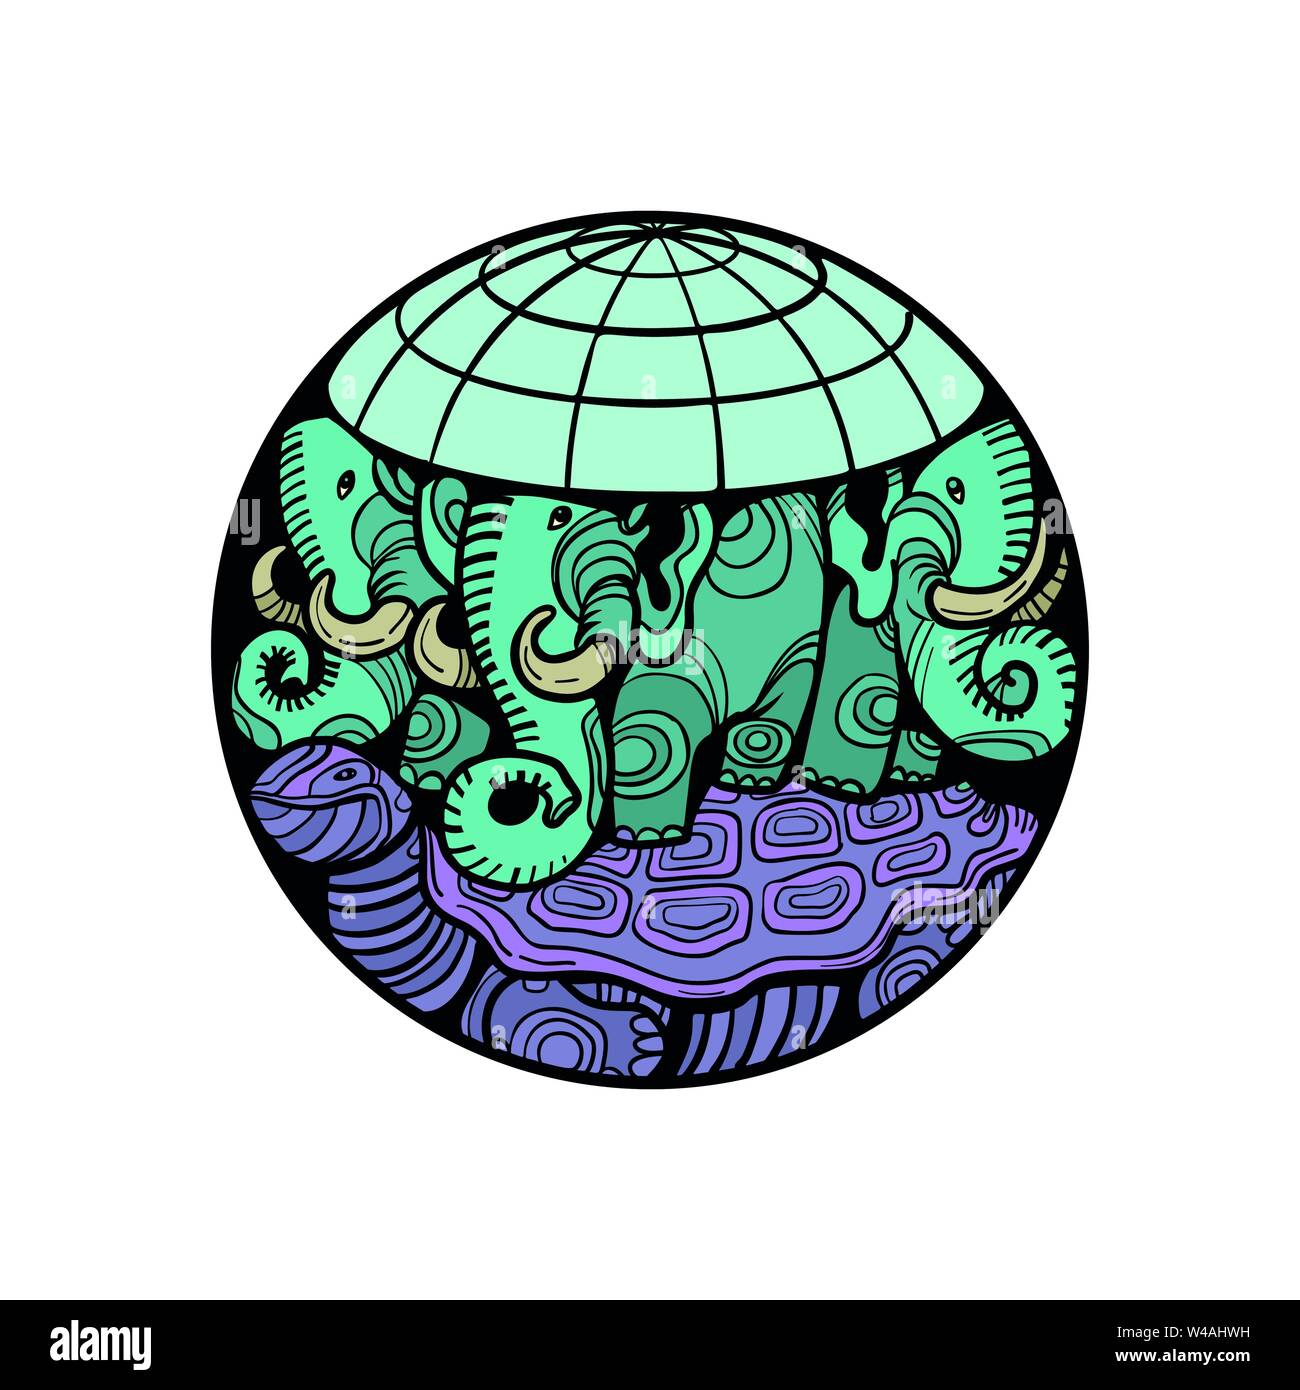 La planète terre disque repose sur un éléphant, et une tortue Illustration de Vecteur